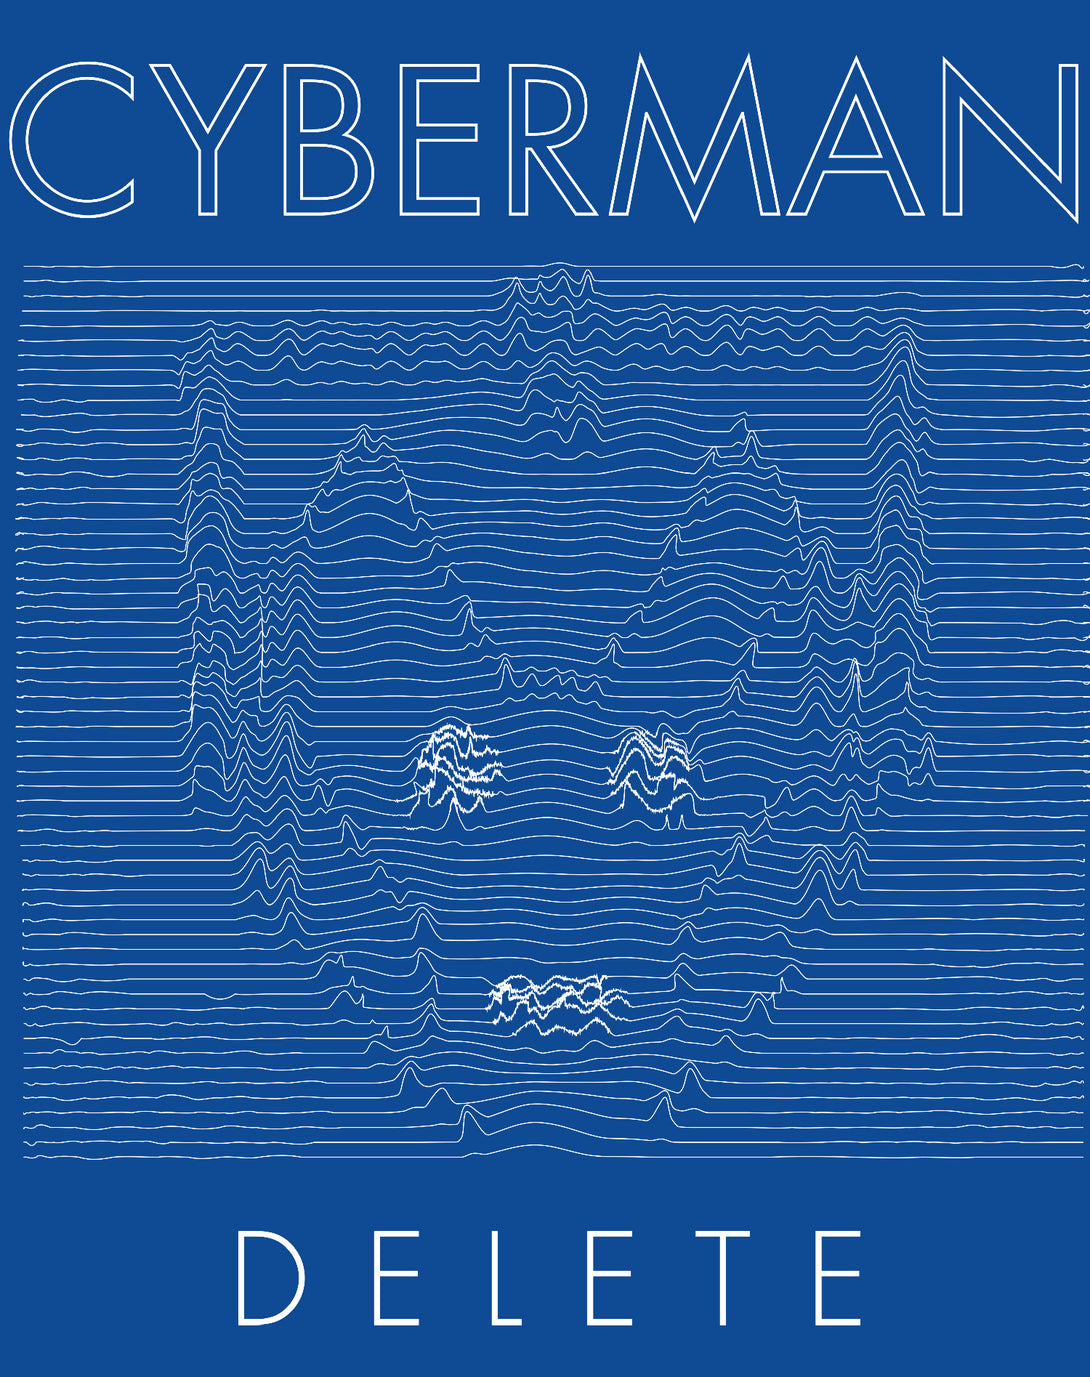 Doctor Who Spacetime-Tour Cybermen Official Men's T-shirt Blue - Urban Species Design Close Up